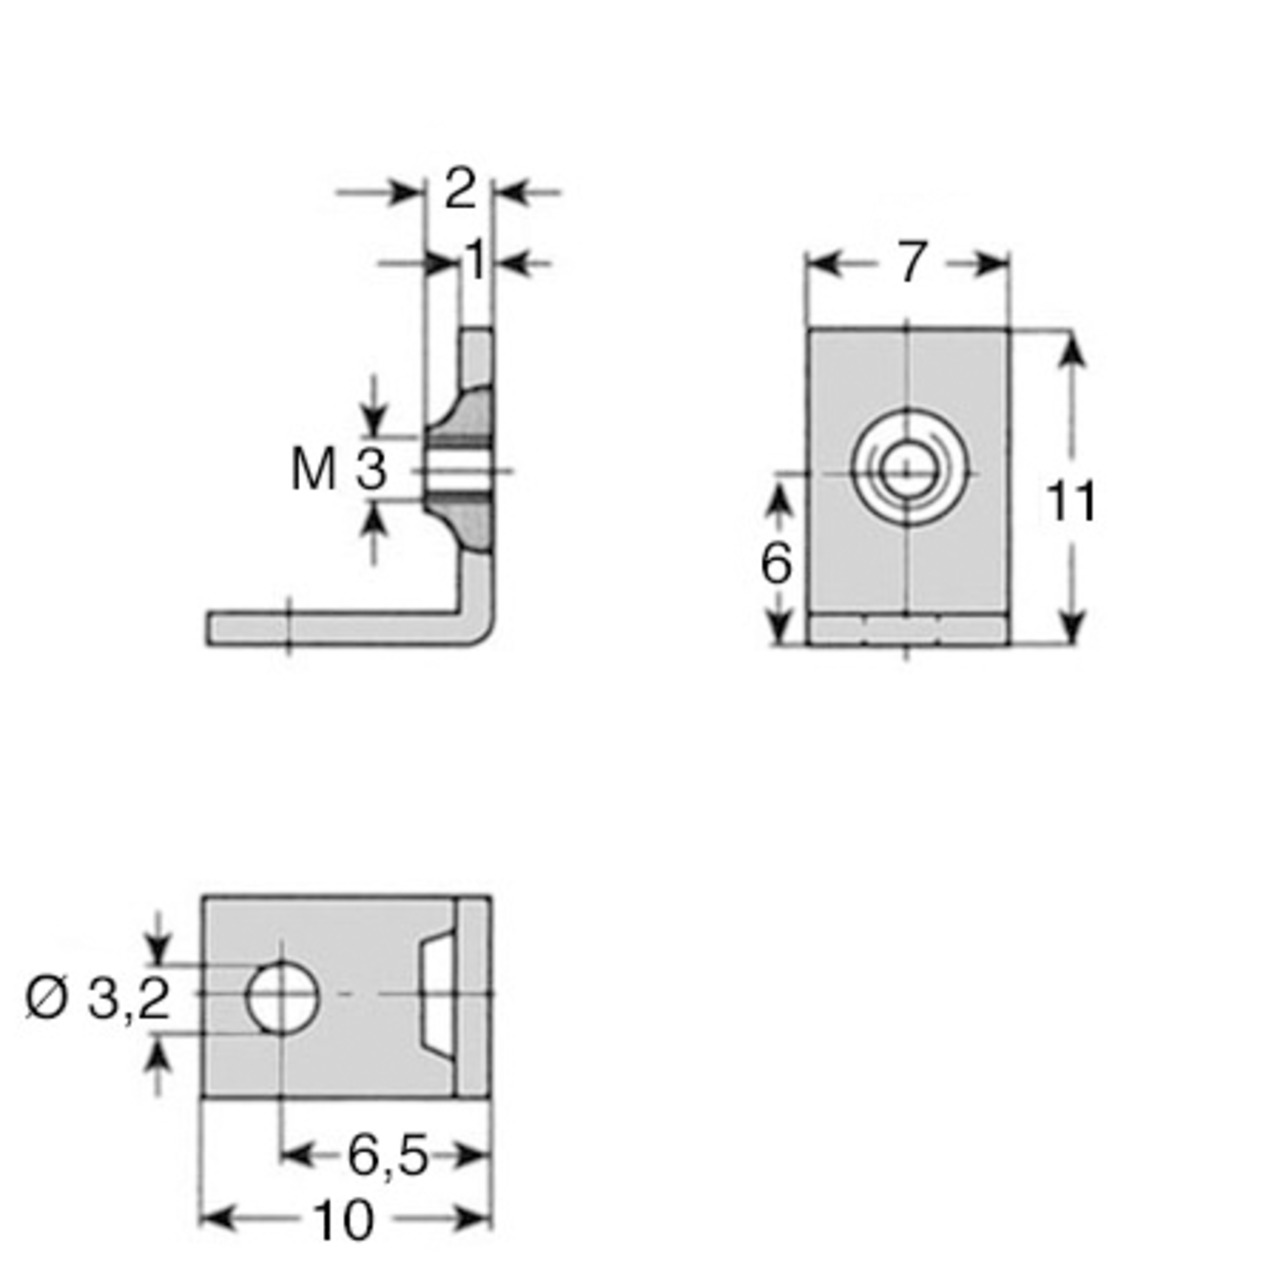 Befestigungswinkel- Seitenlänge ca- 10 mm- Breite 7 mm unter Komponenten